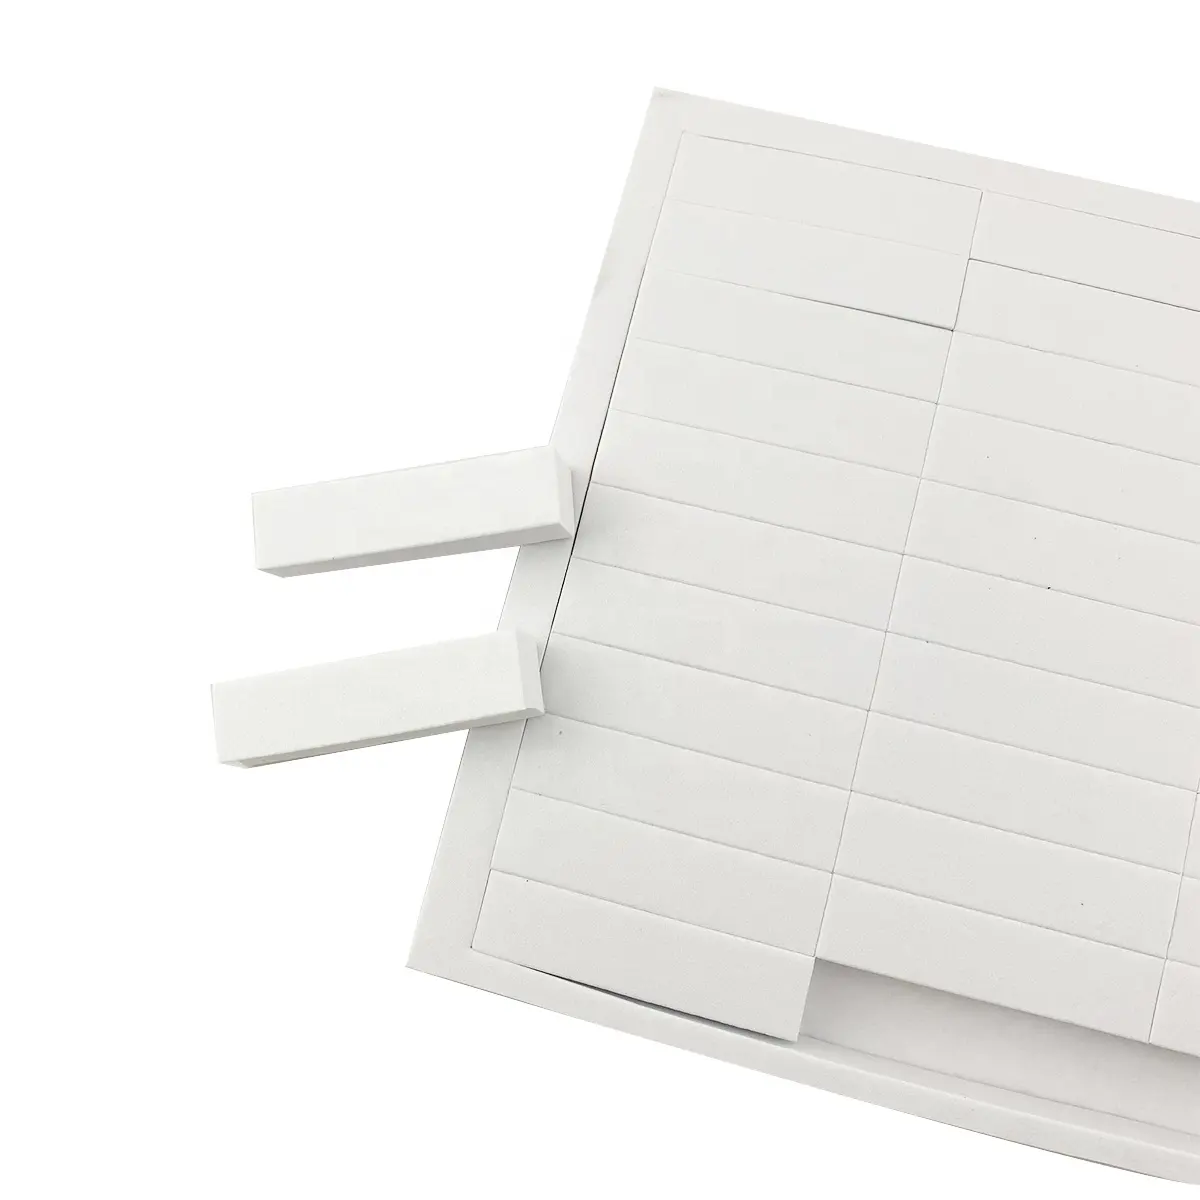 사용자 정의 크기 다이 컷 직사각형 스트립 코팅 접착 압력 민감한 단면 다시 접착 흰색 eva 스폰지 폼 테이프